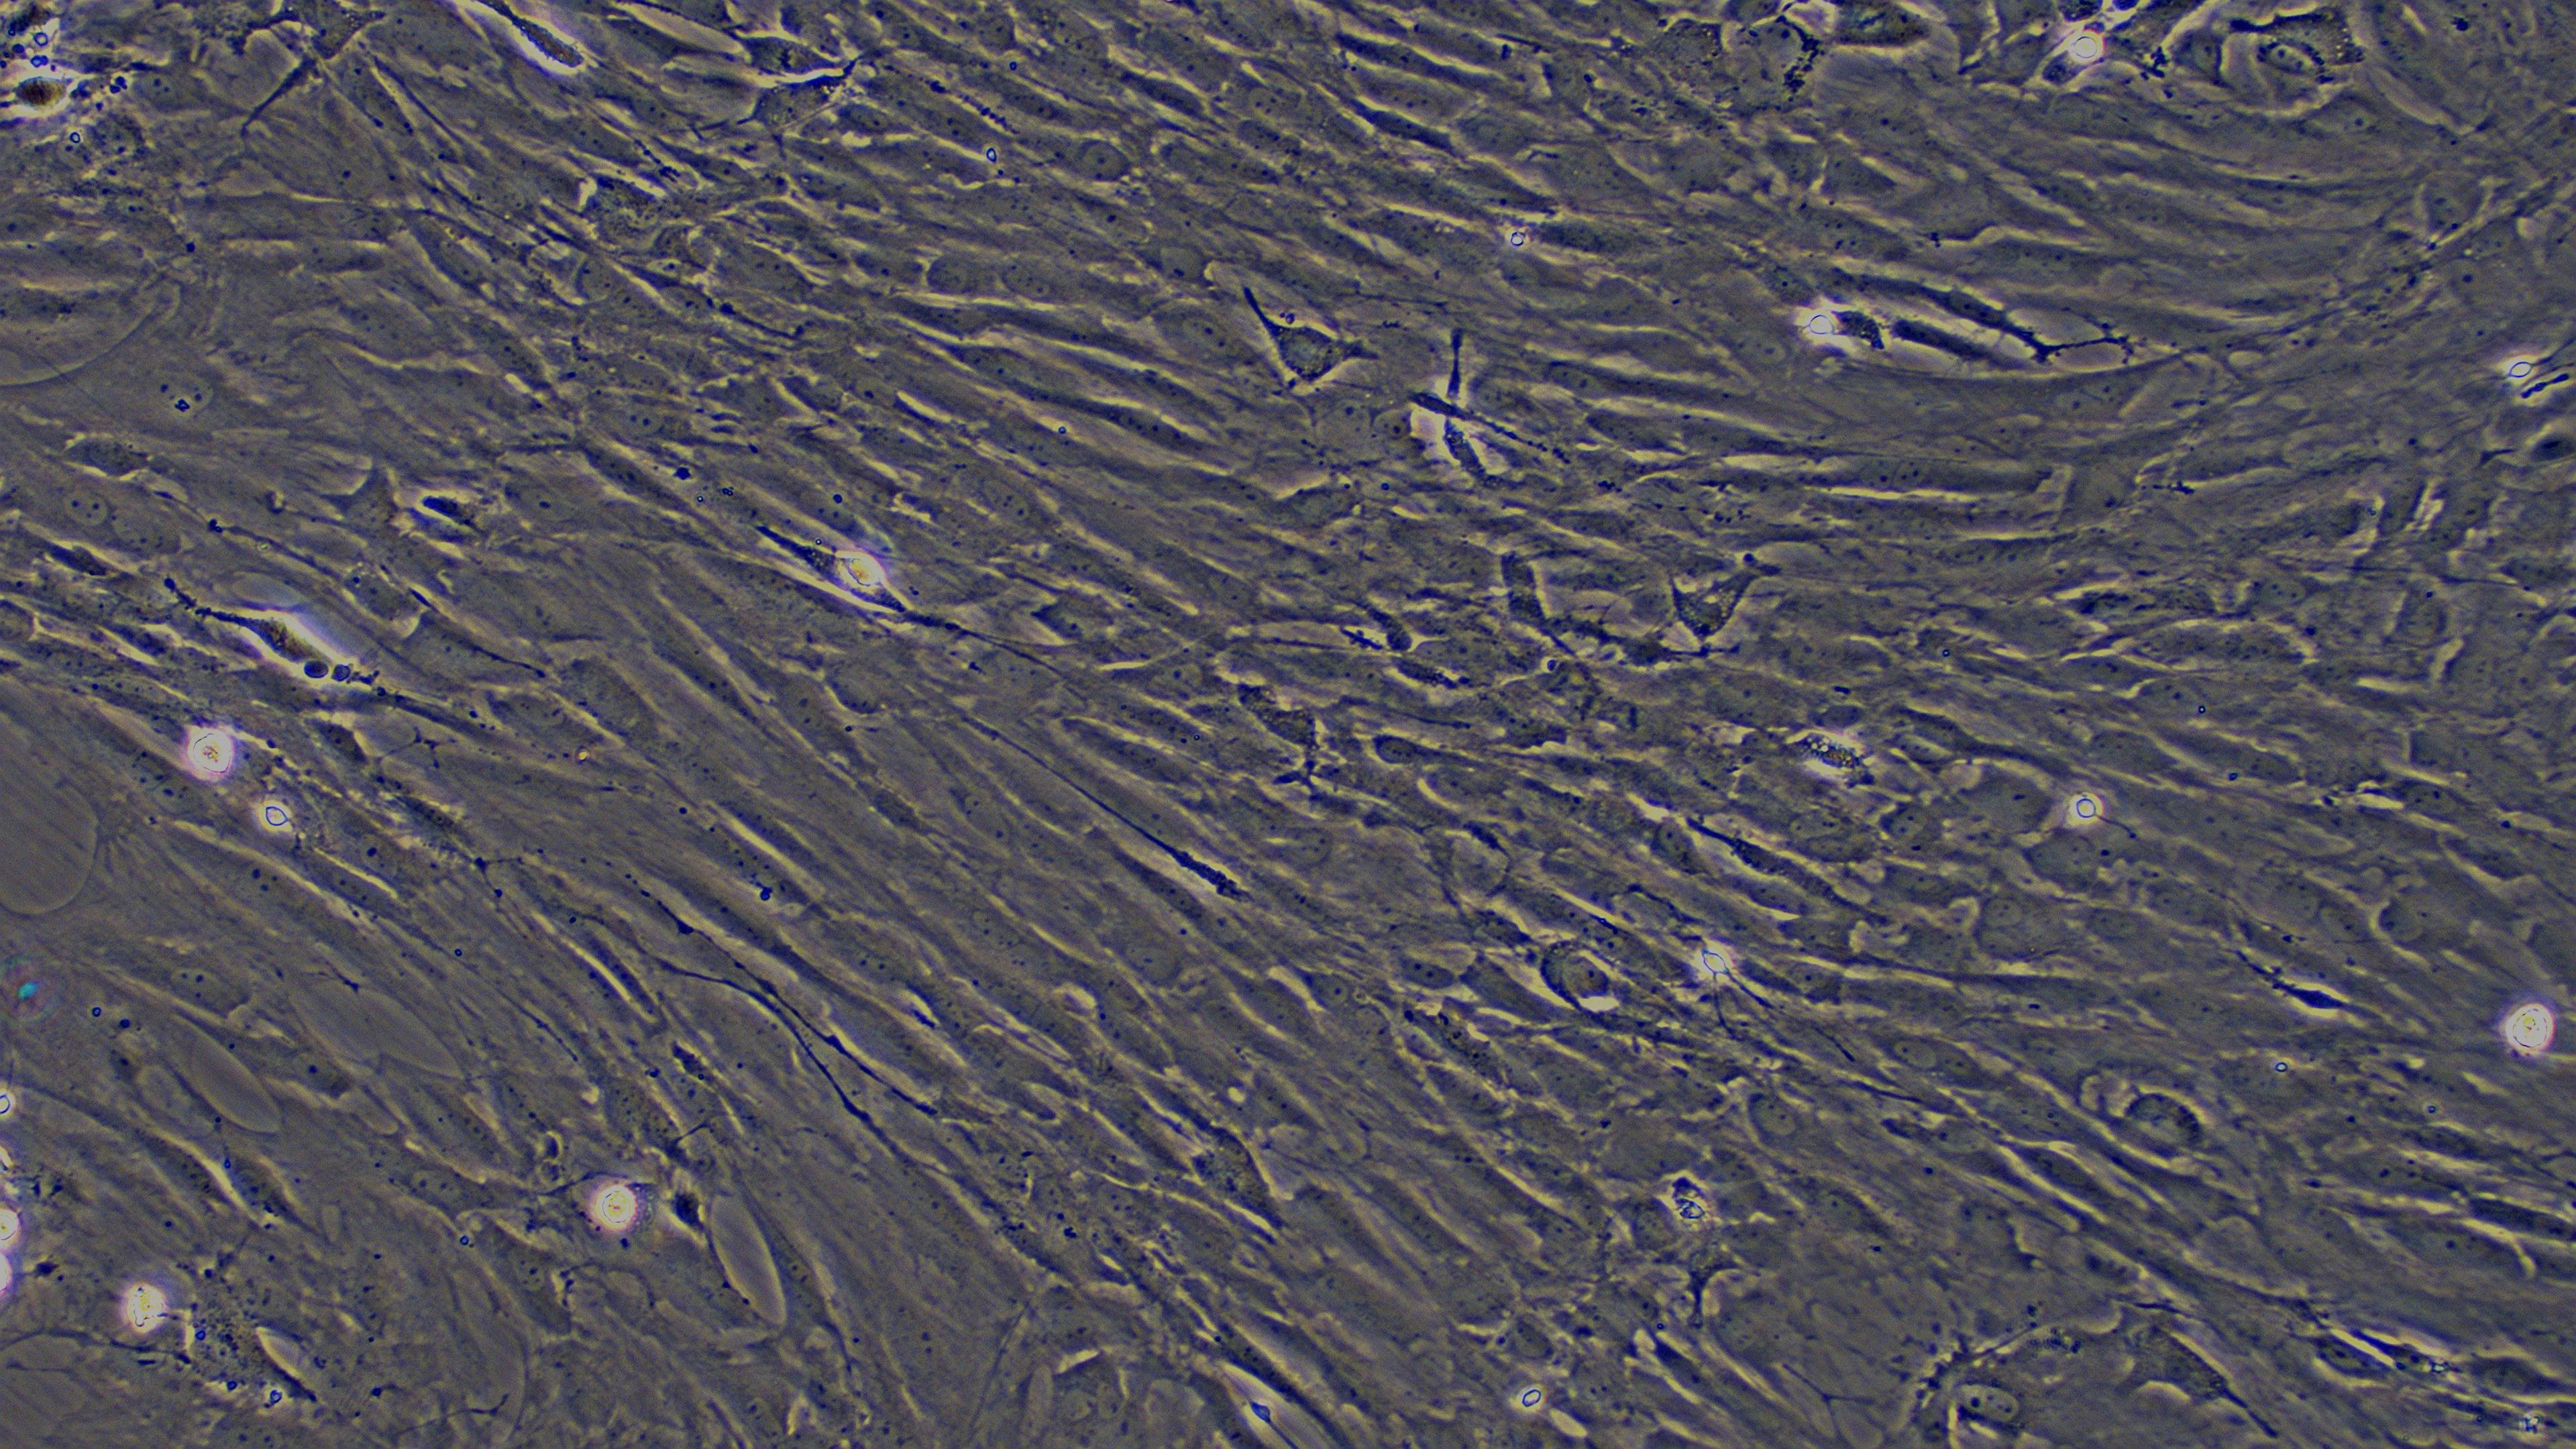 大鼠脑膜细胞(MC)原代细胞